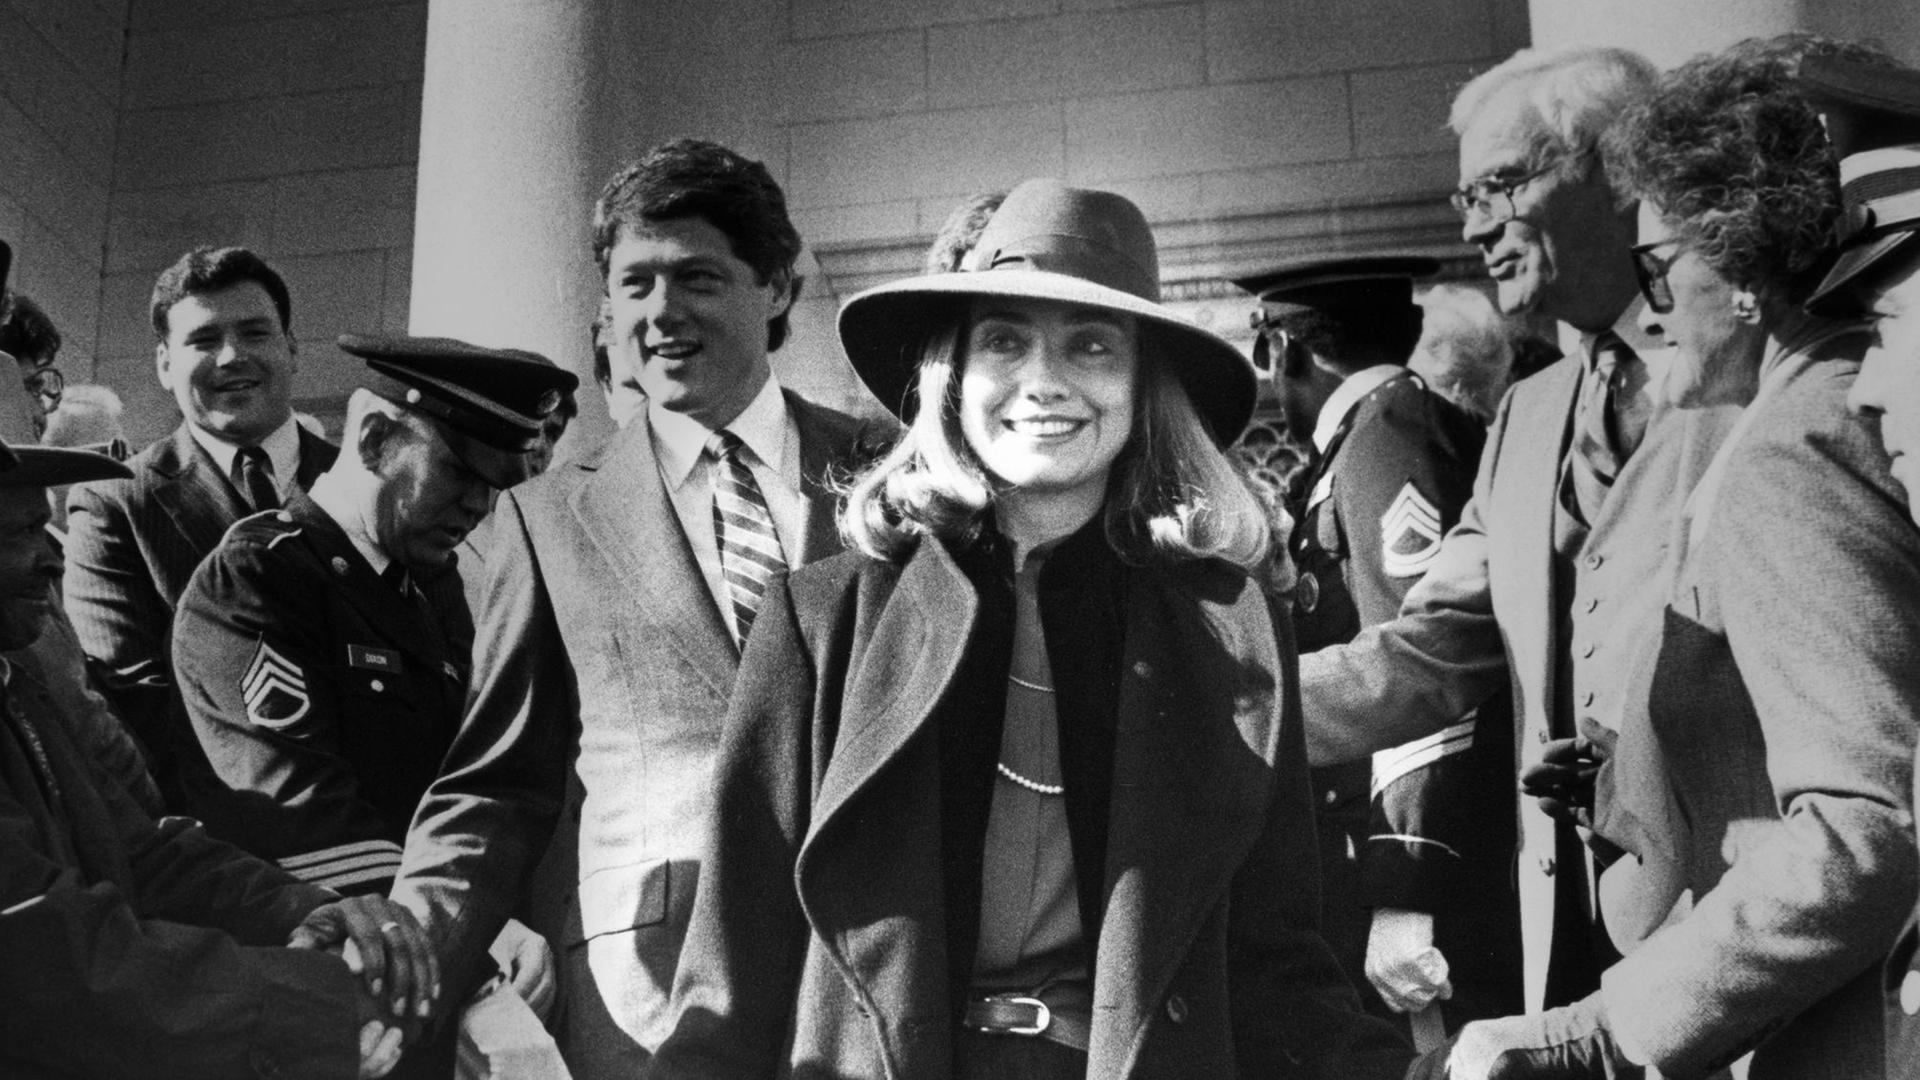 Historisches Foto von Hillary Clinton im Wahlkampf von ihrem Mann, in einer Menschenmenge beim Hände schütteln, im Hintergrund Bill Clinton.